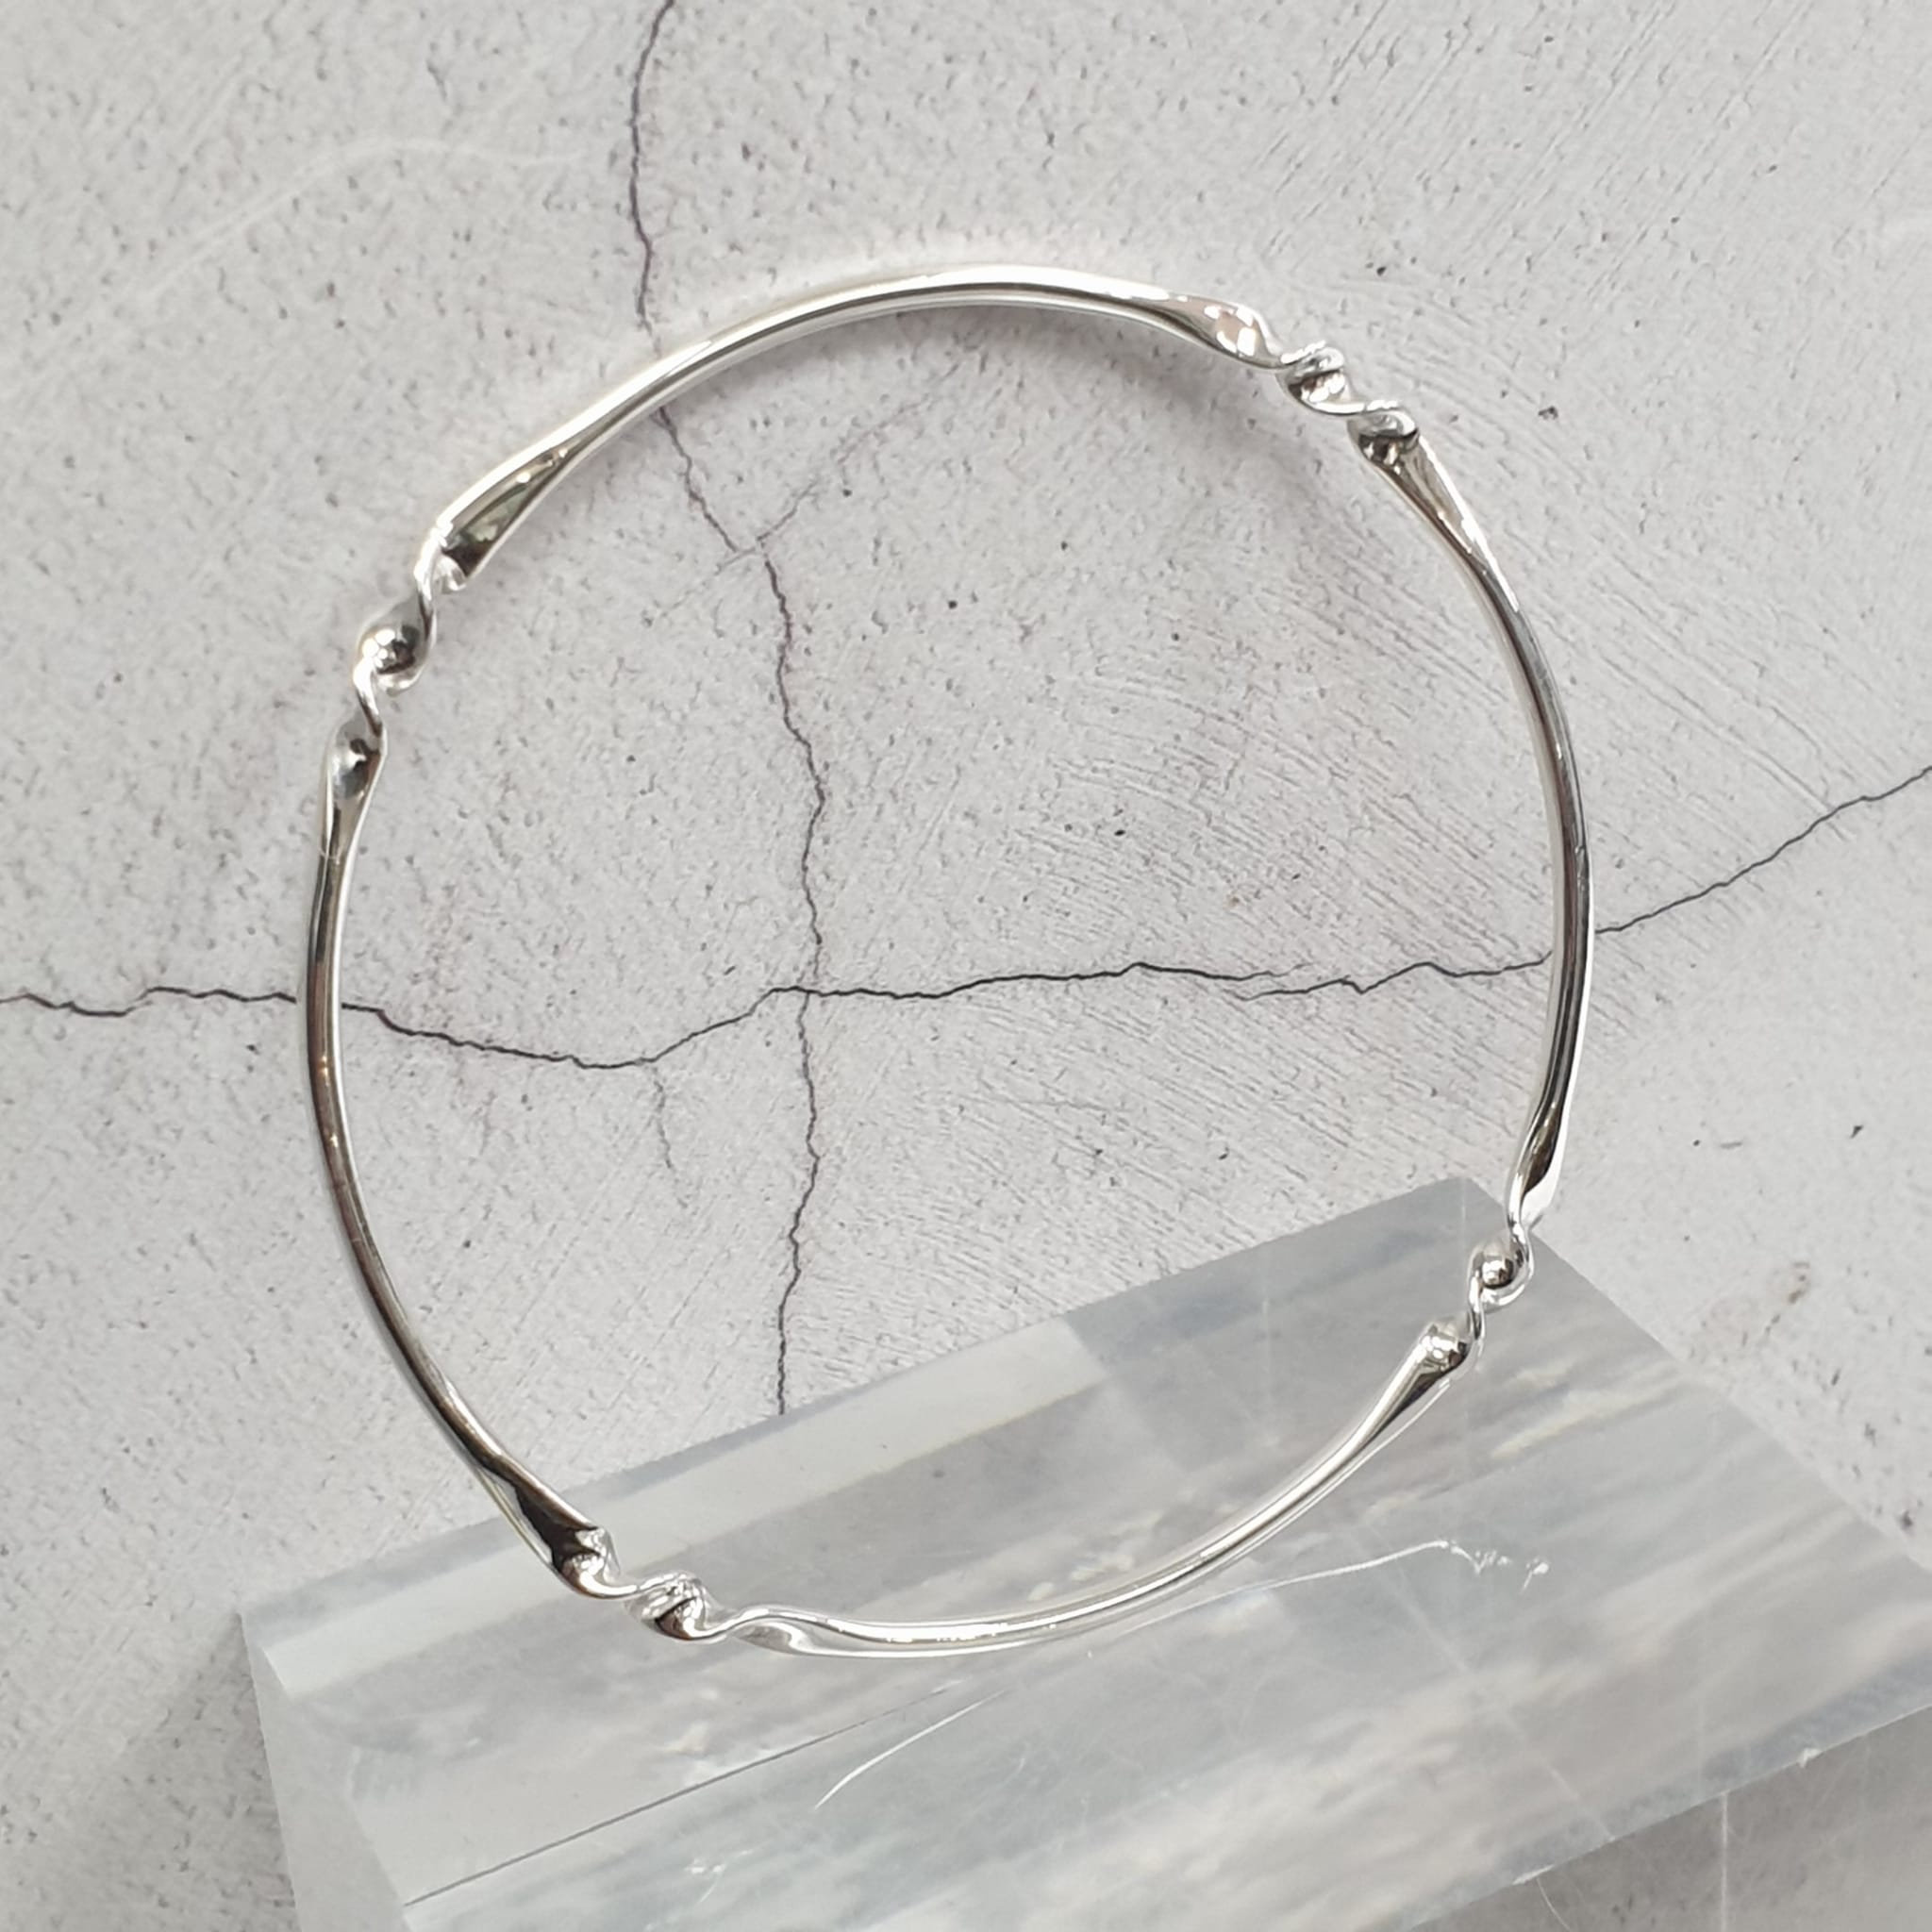 Silver Split Cuff Bracelet by David Louis